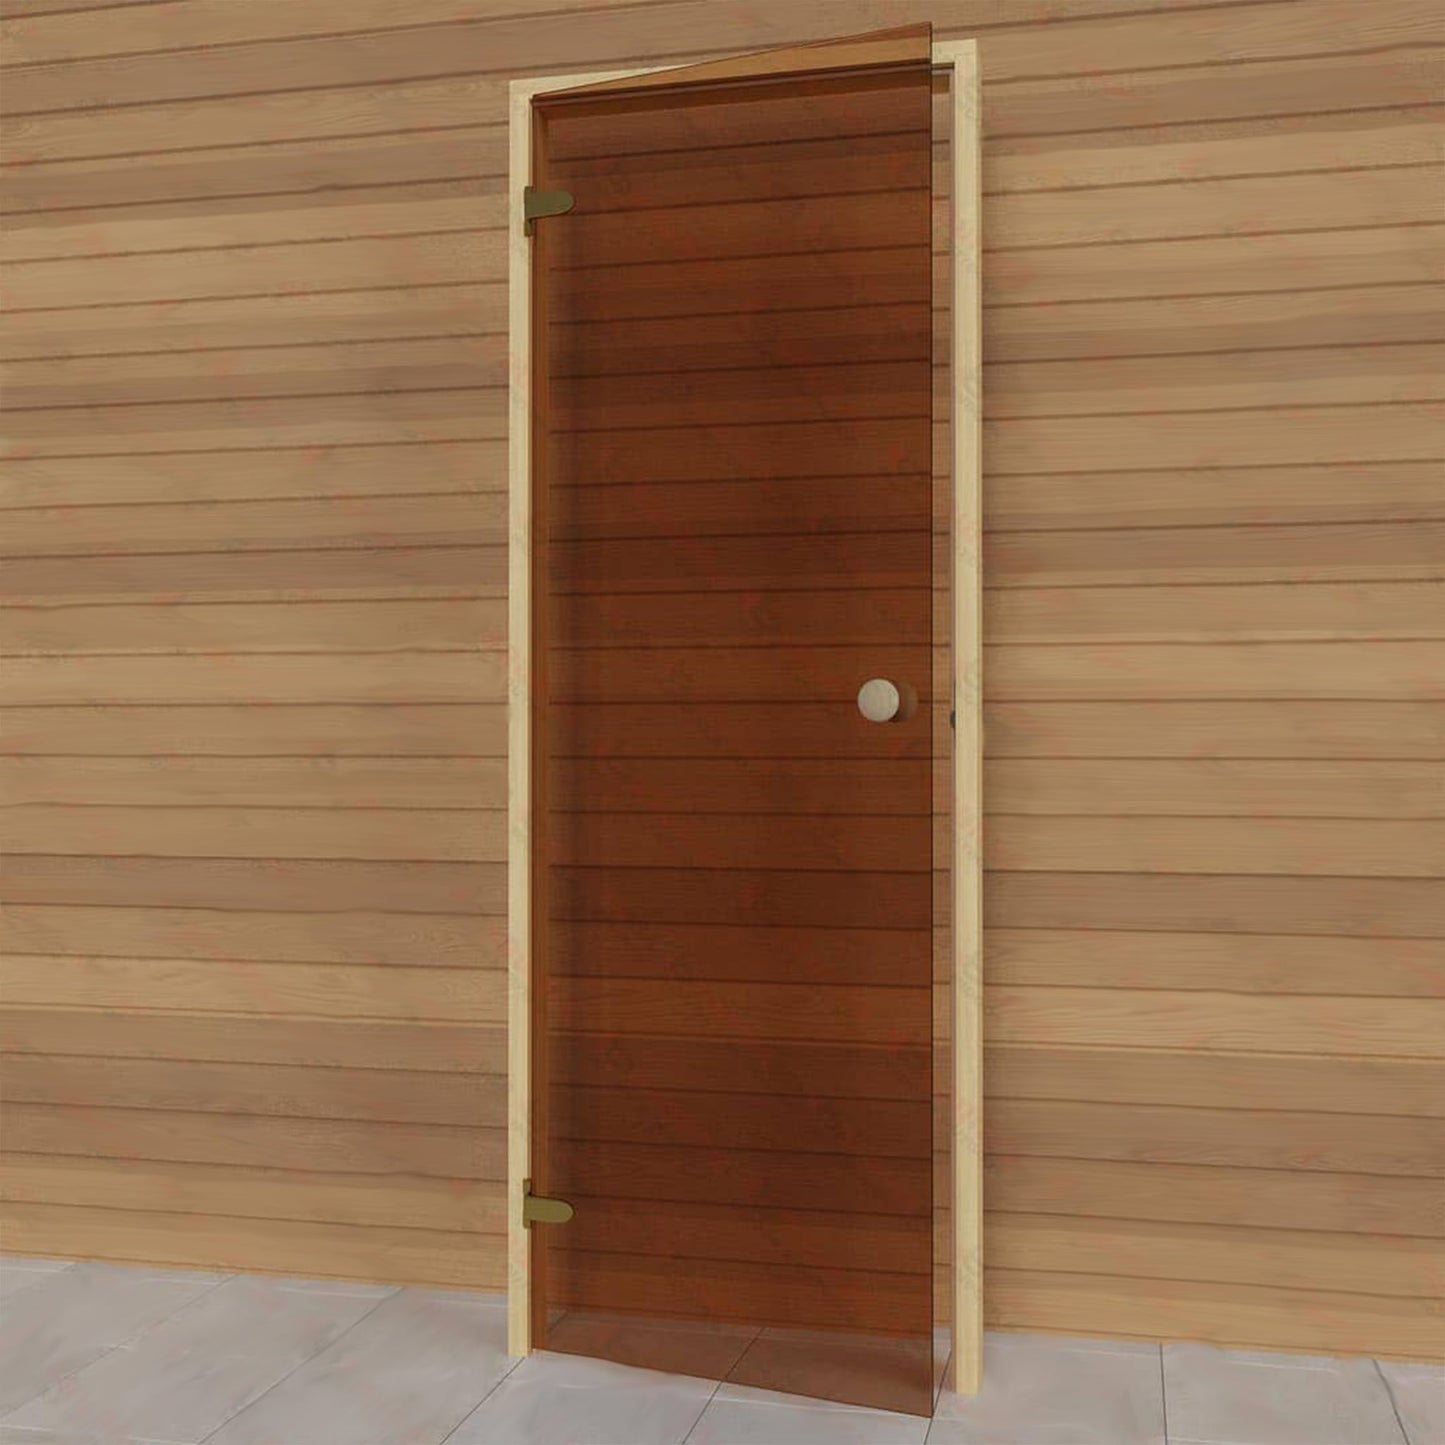 Left side sauna bronze glass door. Elu Saunas and Cold Tubs.